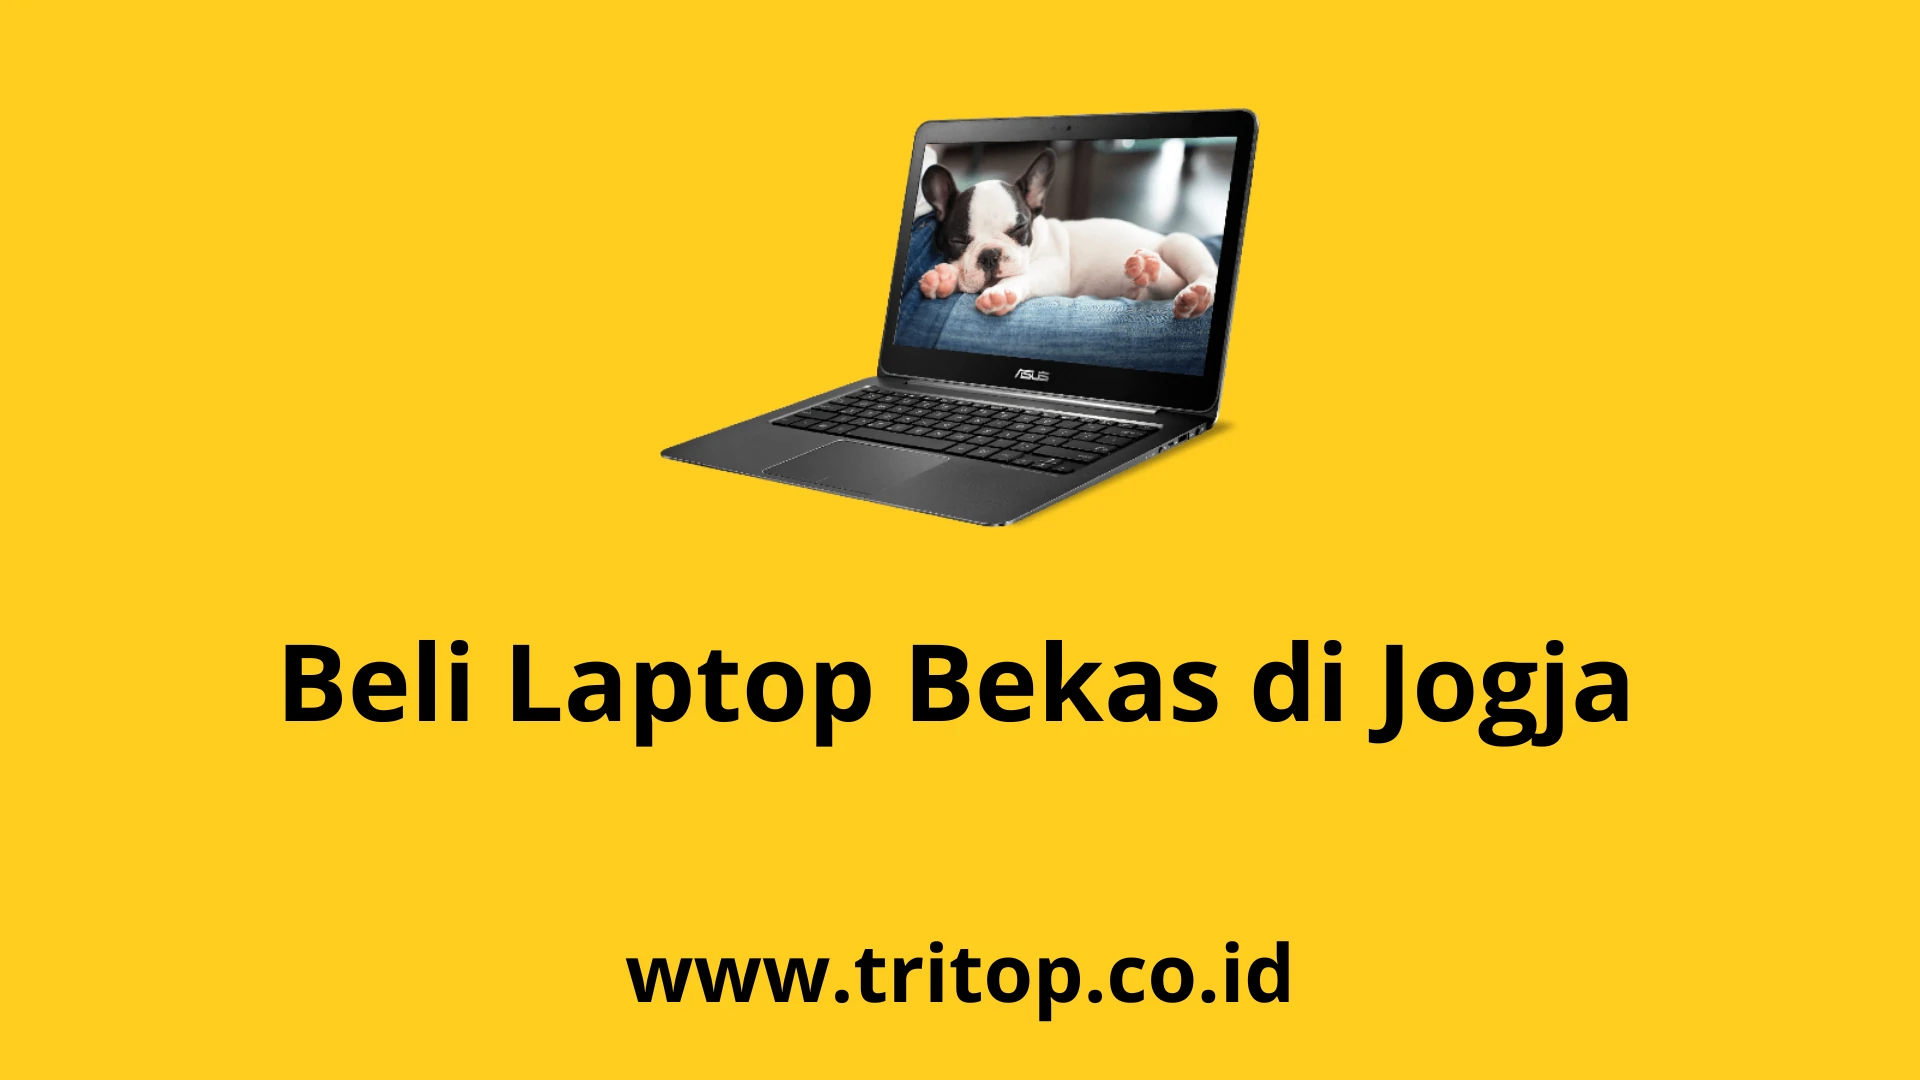 Beli Laptop Bekas Jogja Tritop.co.id